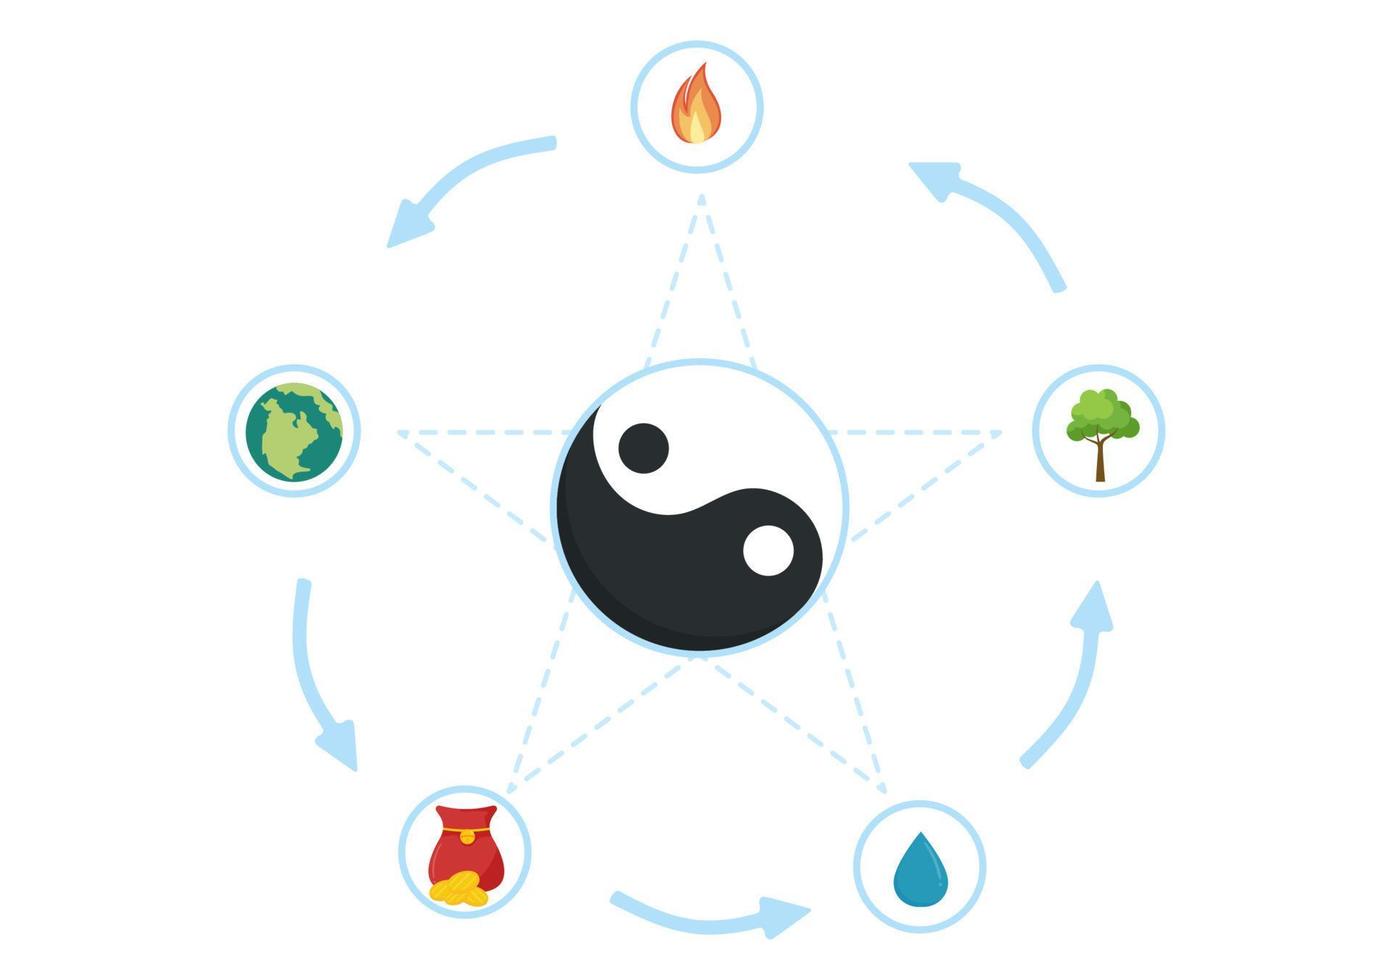 feng shui 5 elementos de la naturaleza en círculos conectados por líneas con agua, madera, fuego, tierra, metal en dibujos animados planos dibujados a mano ilustración de plantillas vector